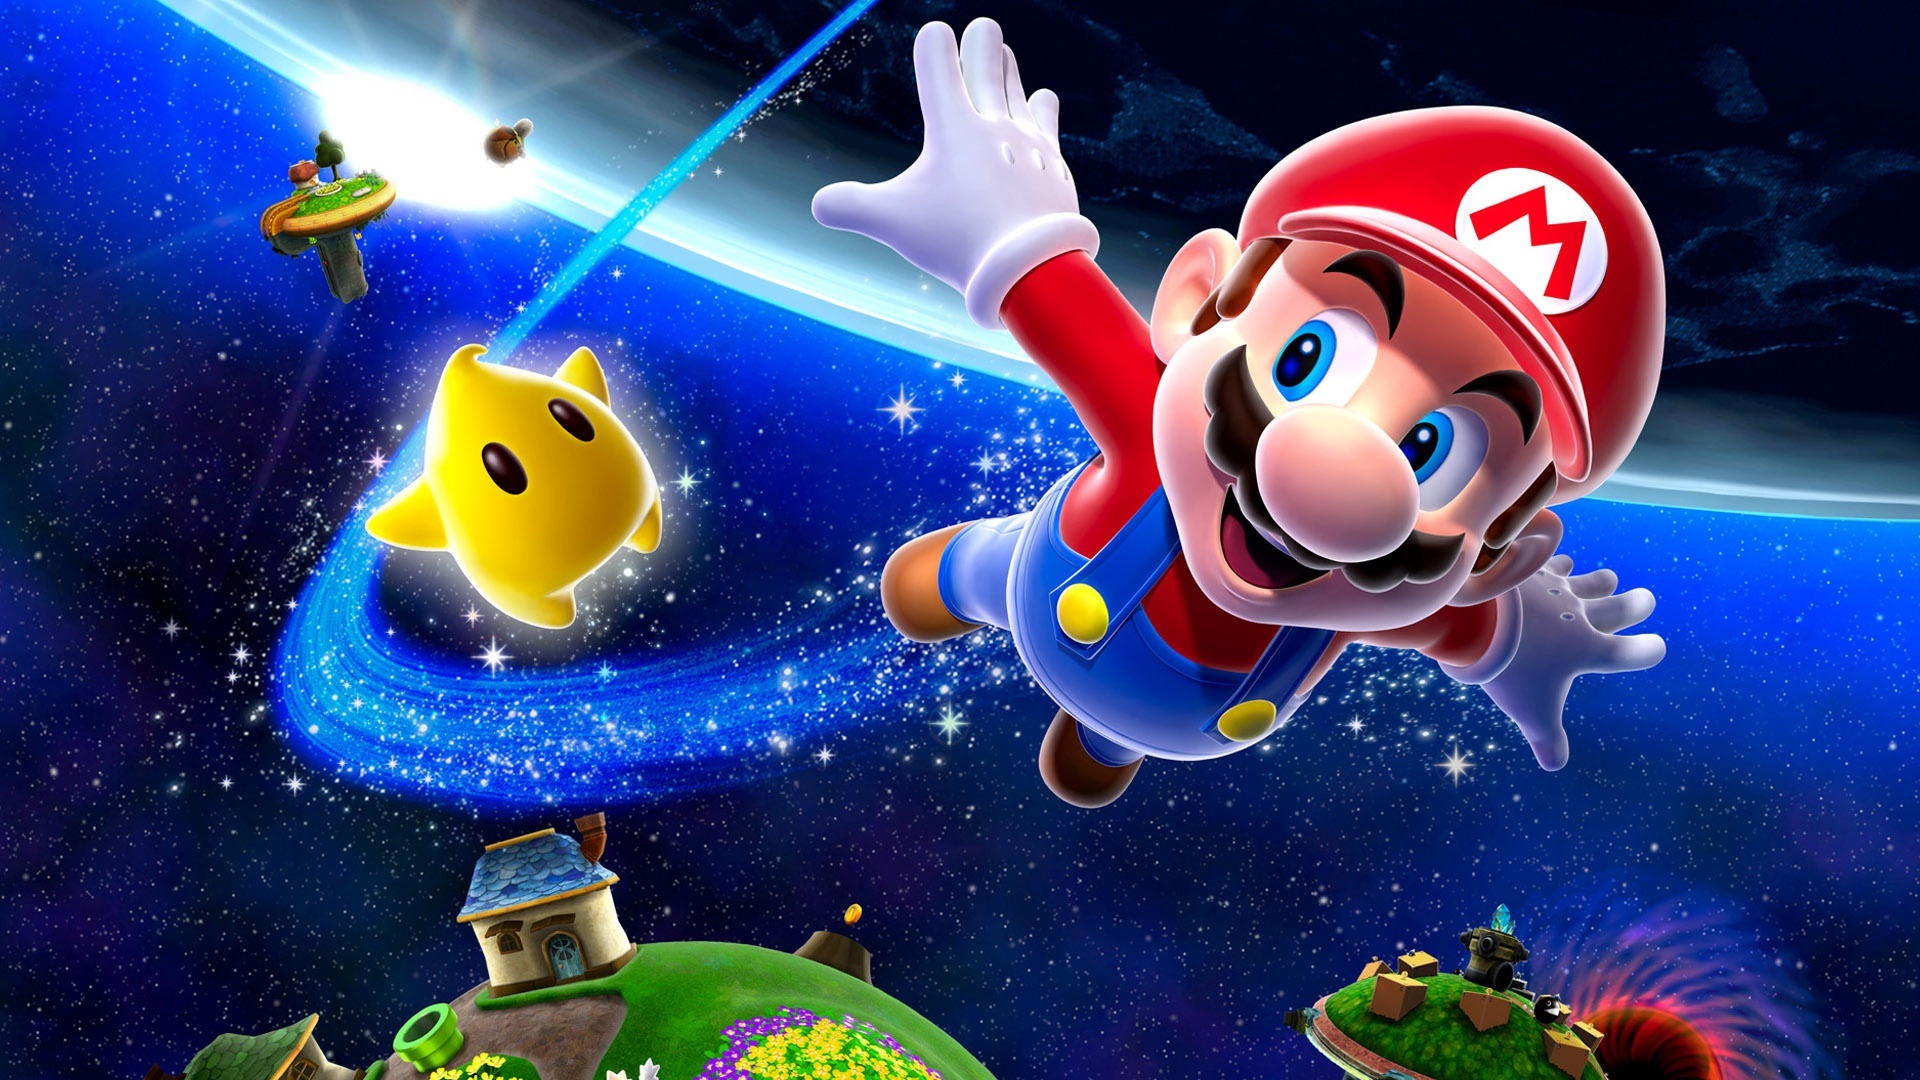 Mario Desktop Galaxy Super Background Wallpaper Image